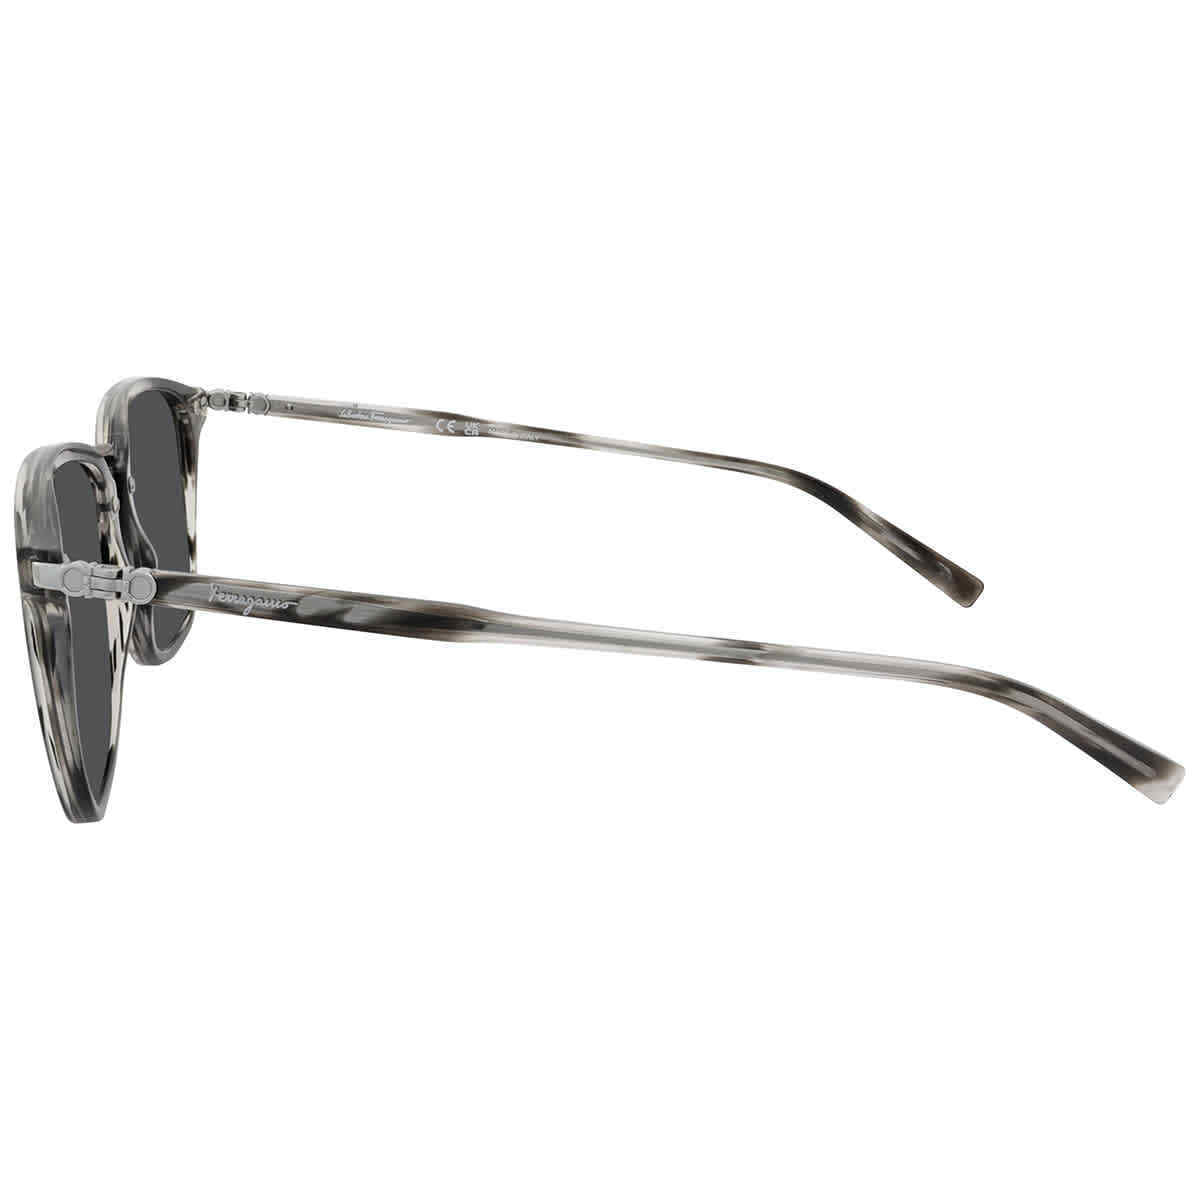 Salvatore Ferragamo SF910S-003 54mm New Sunglasses